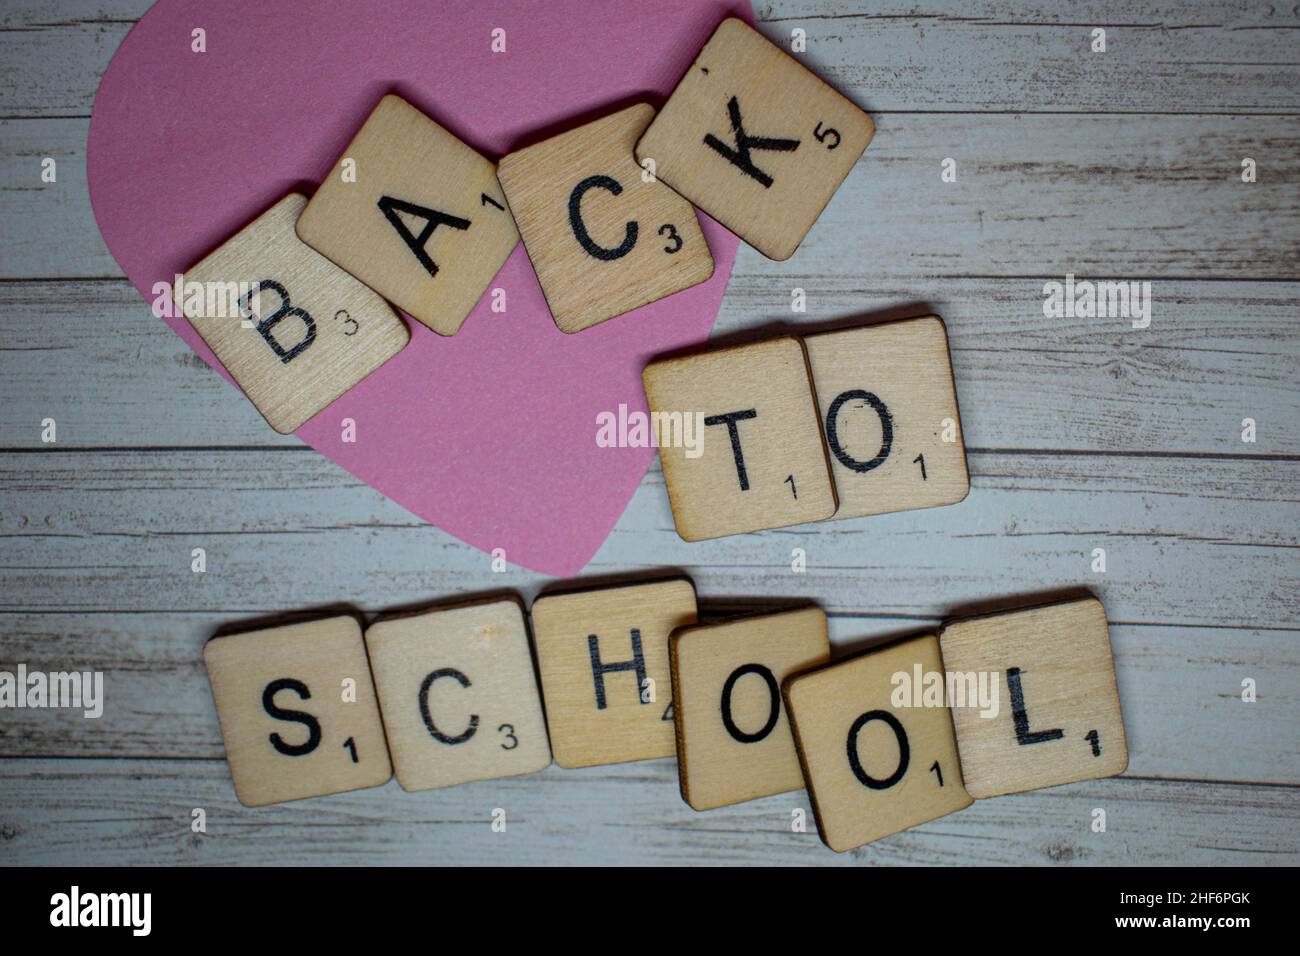 Back to School Konzept. Zurück in die Schule geschrieben auf scrabble Buchstaben auf einem rustikalen hölzernen Hintergrund. Vorbereitung auf die Rückkehr zur Schule nach den s Stockfoto